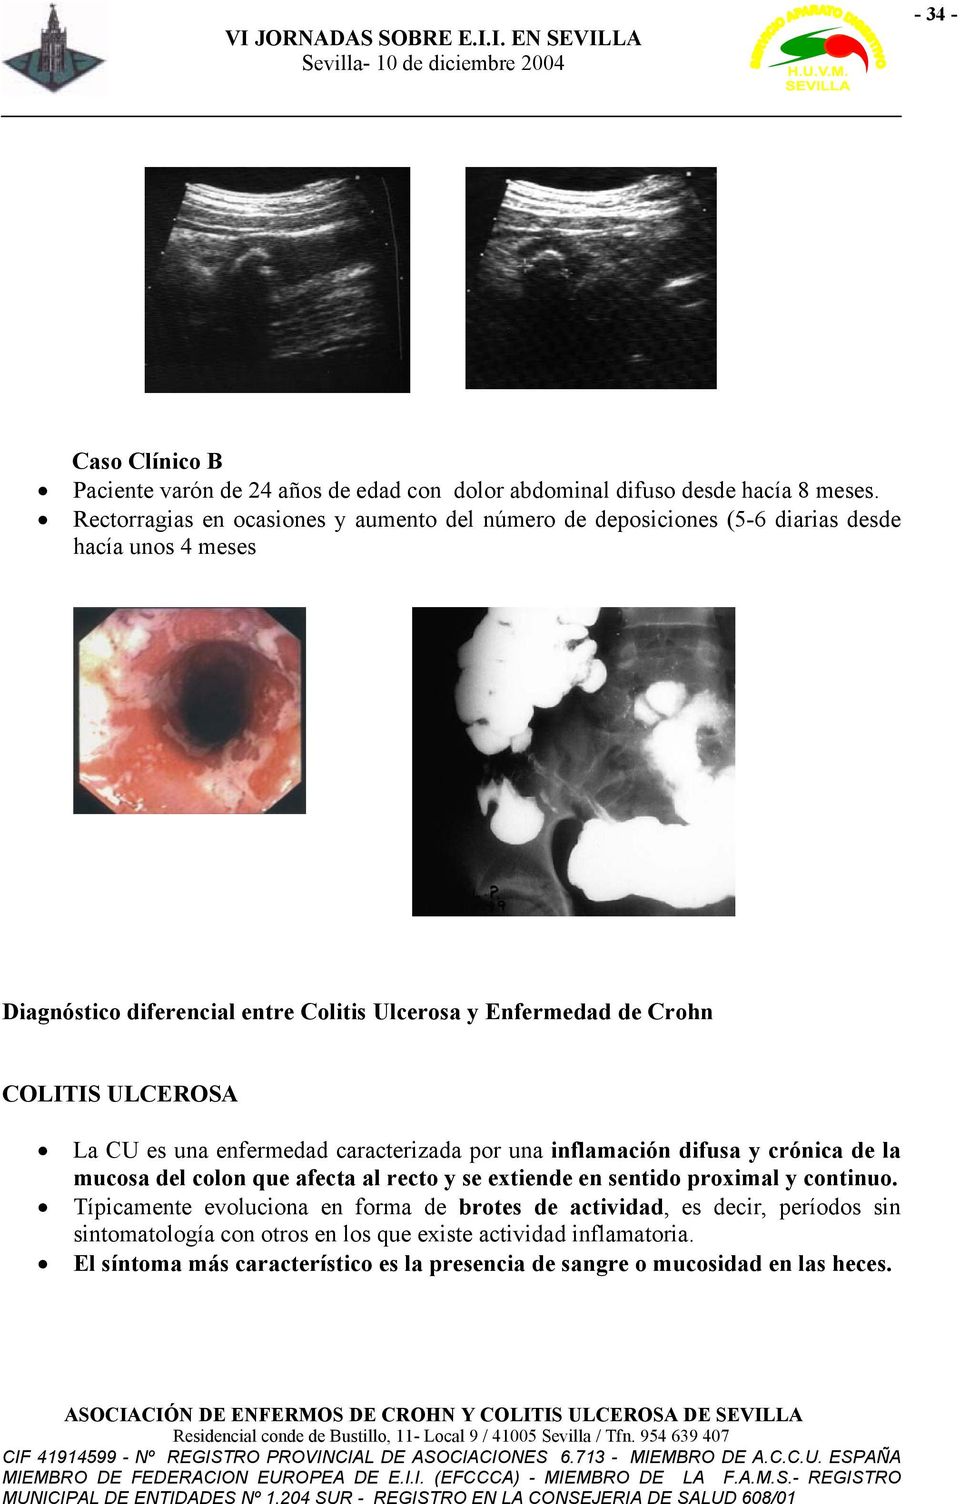 COLITIS ULCEROSA La CU es una enfermedad caracterizada por una inflamación difusa y crónica de la mucosa del colon que afecta al recto y se extiende en sentido proximal y